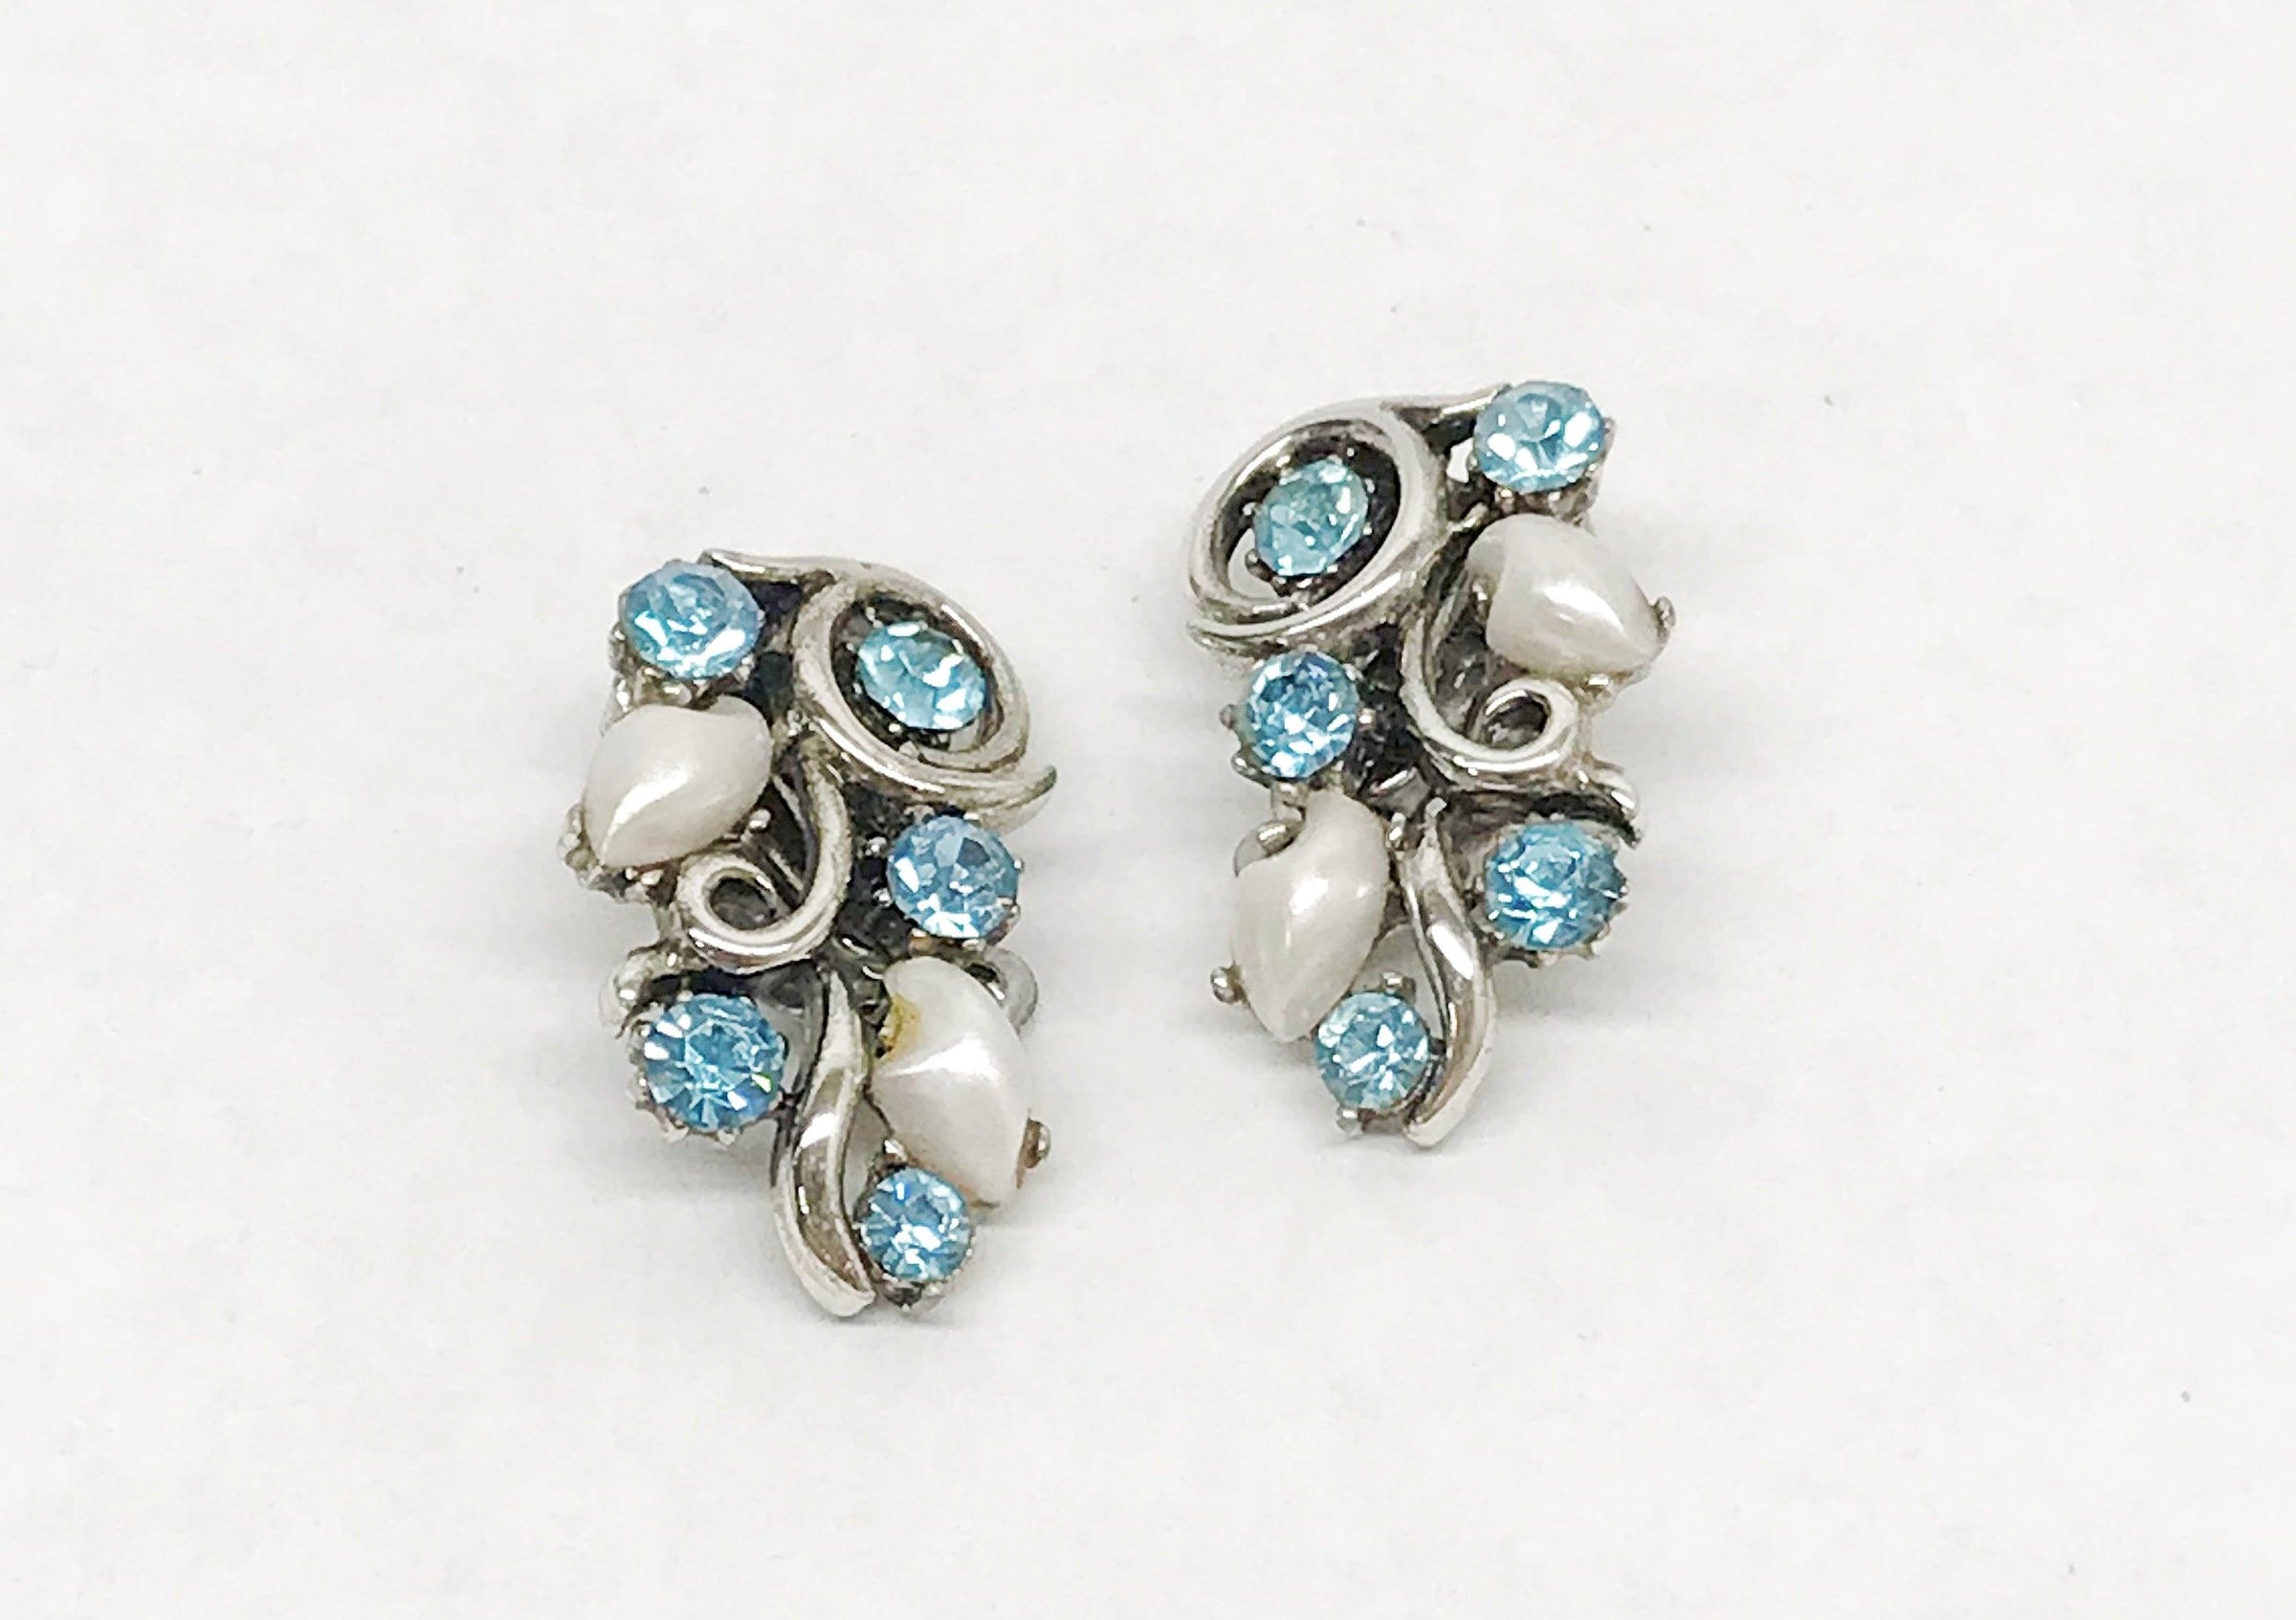 Vintage Round Rhinestone Earrings Leaves Silver Tone Screw 